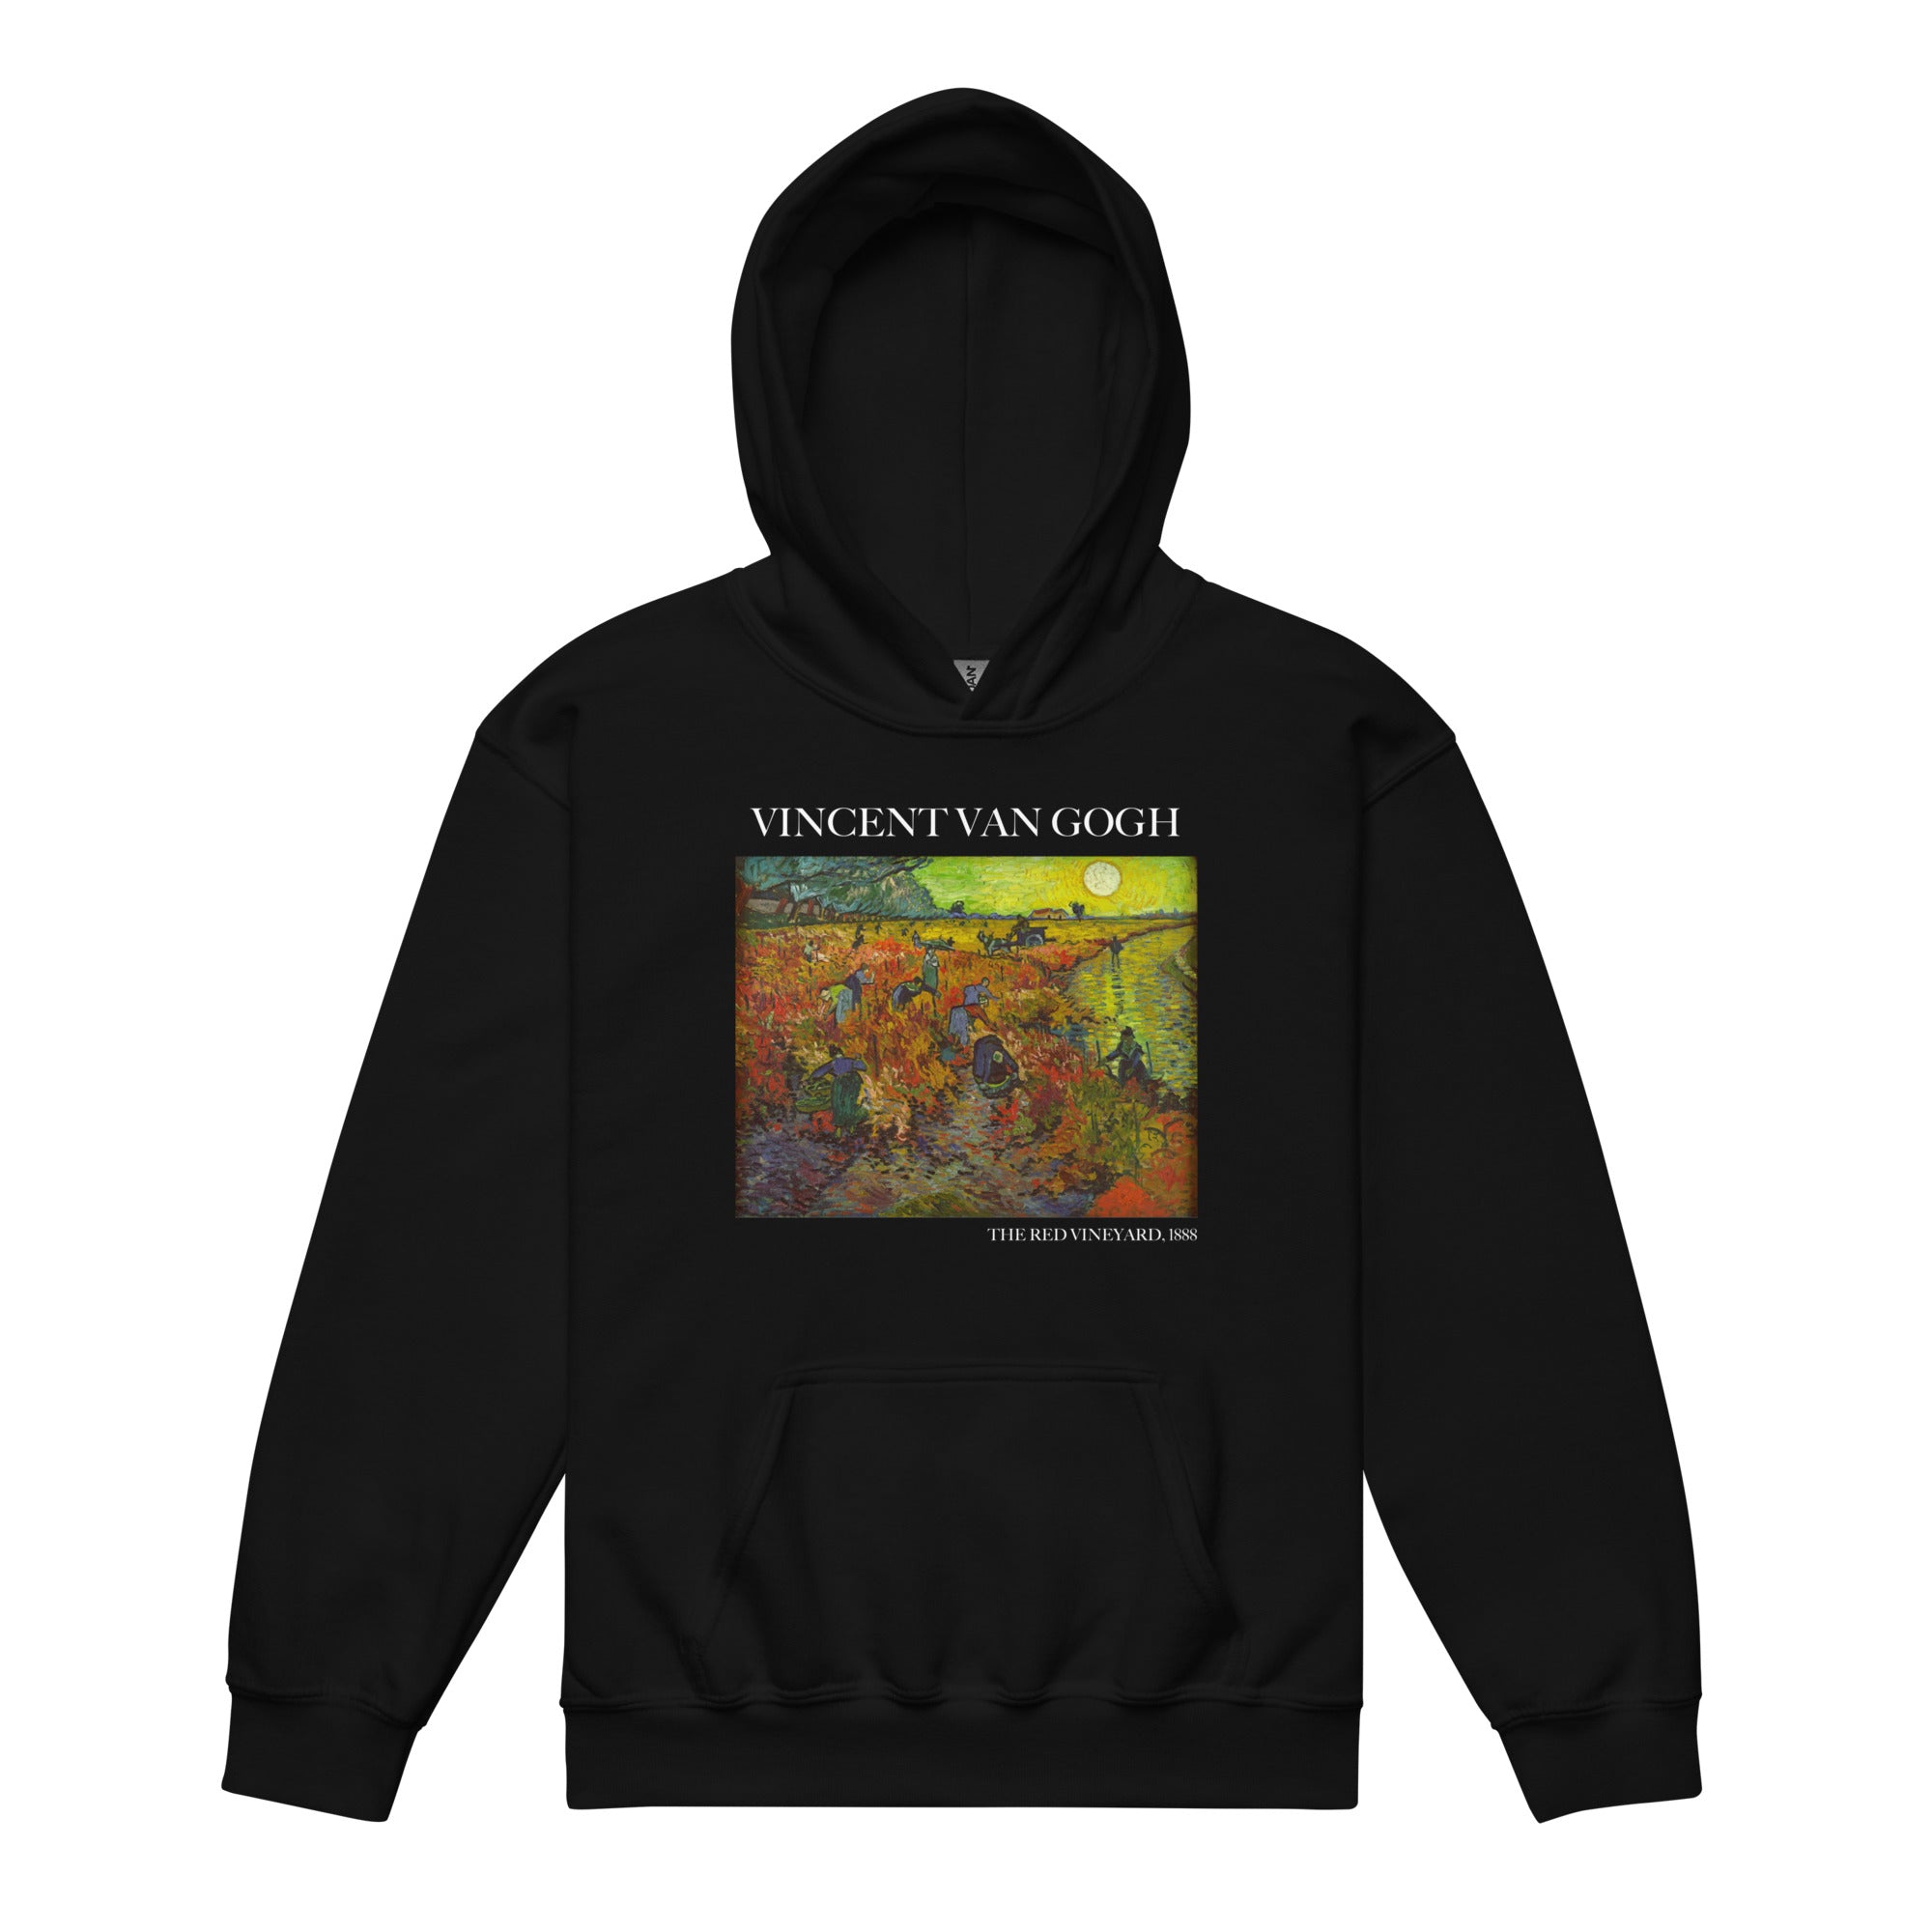 Vincent van Gogh 'The Red Vineyard' Famous Painting Hoodie | Premium Youth Art Hoodie